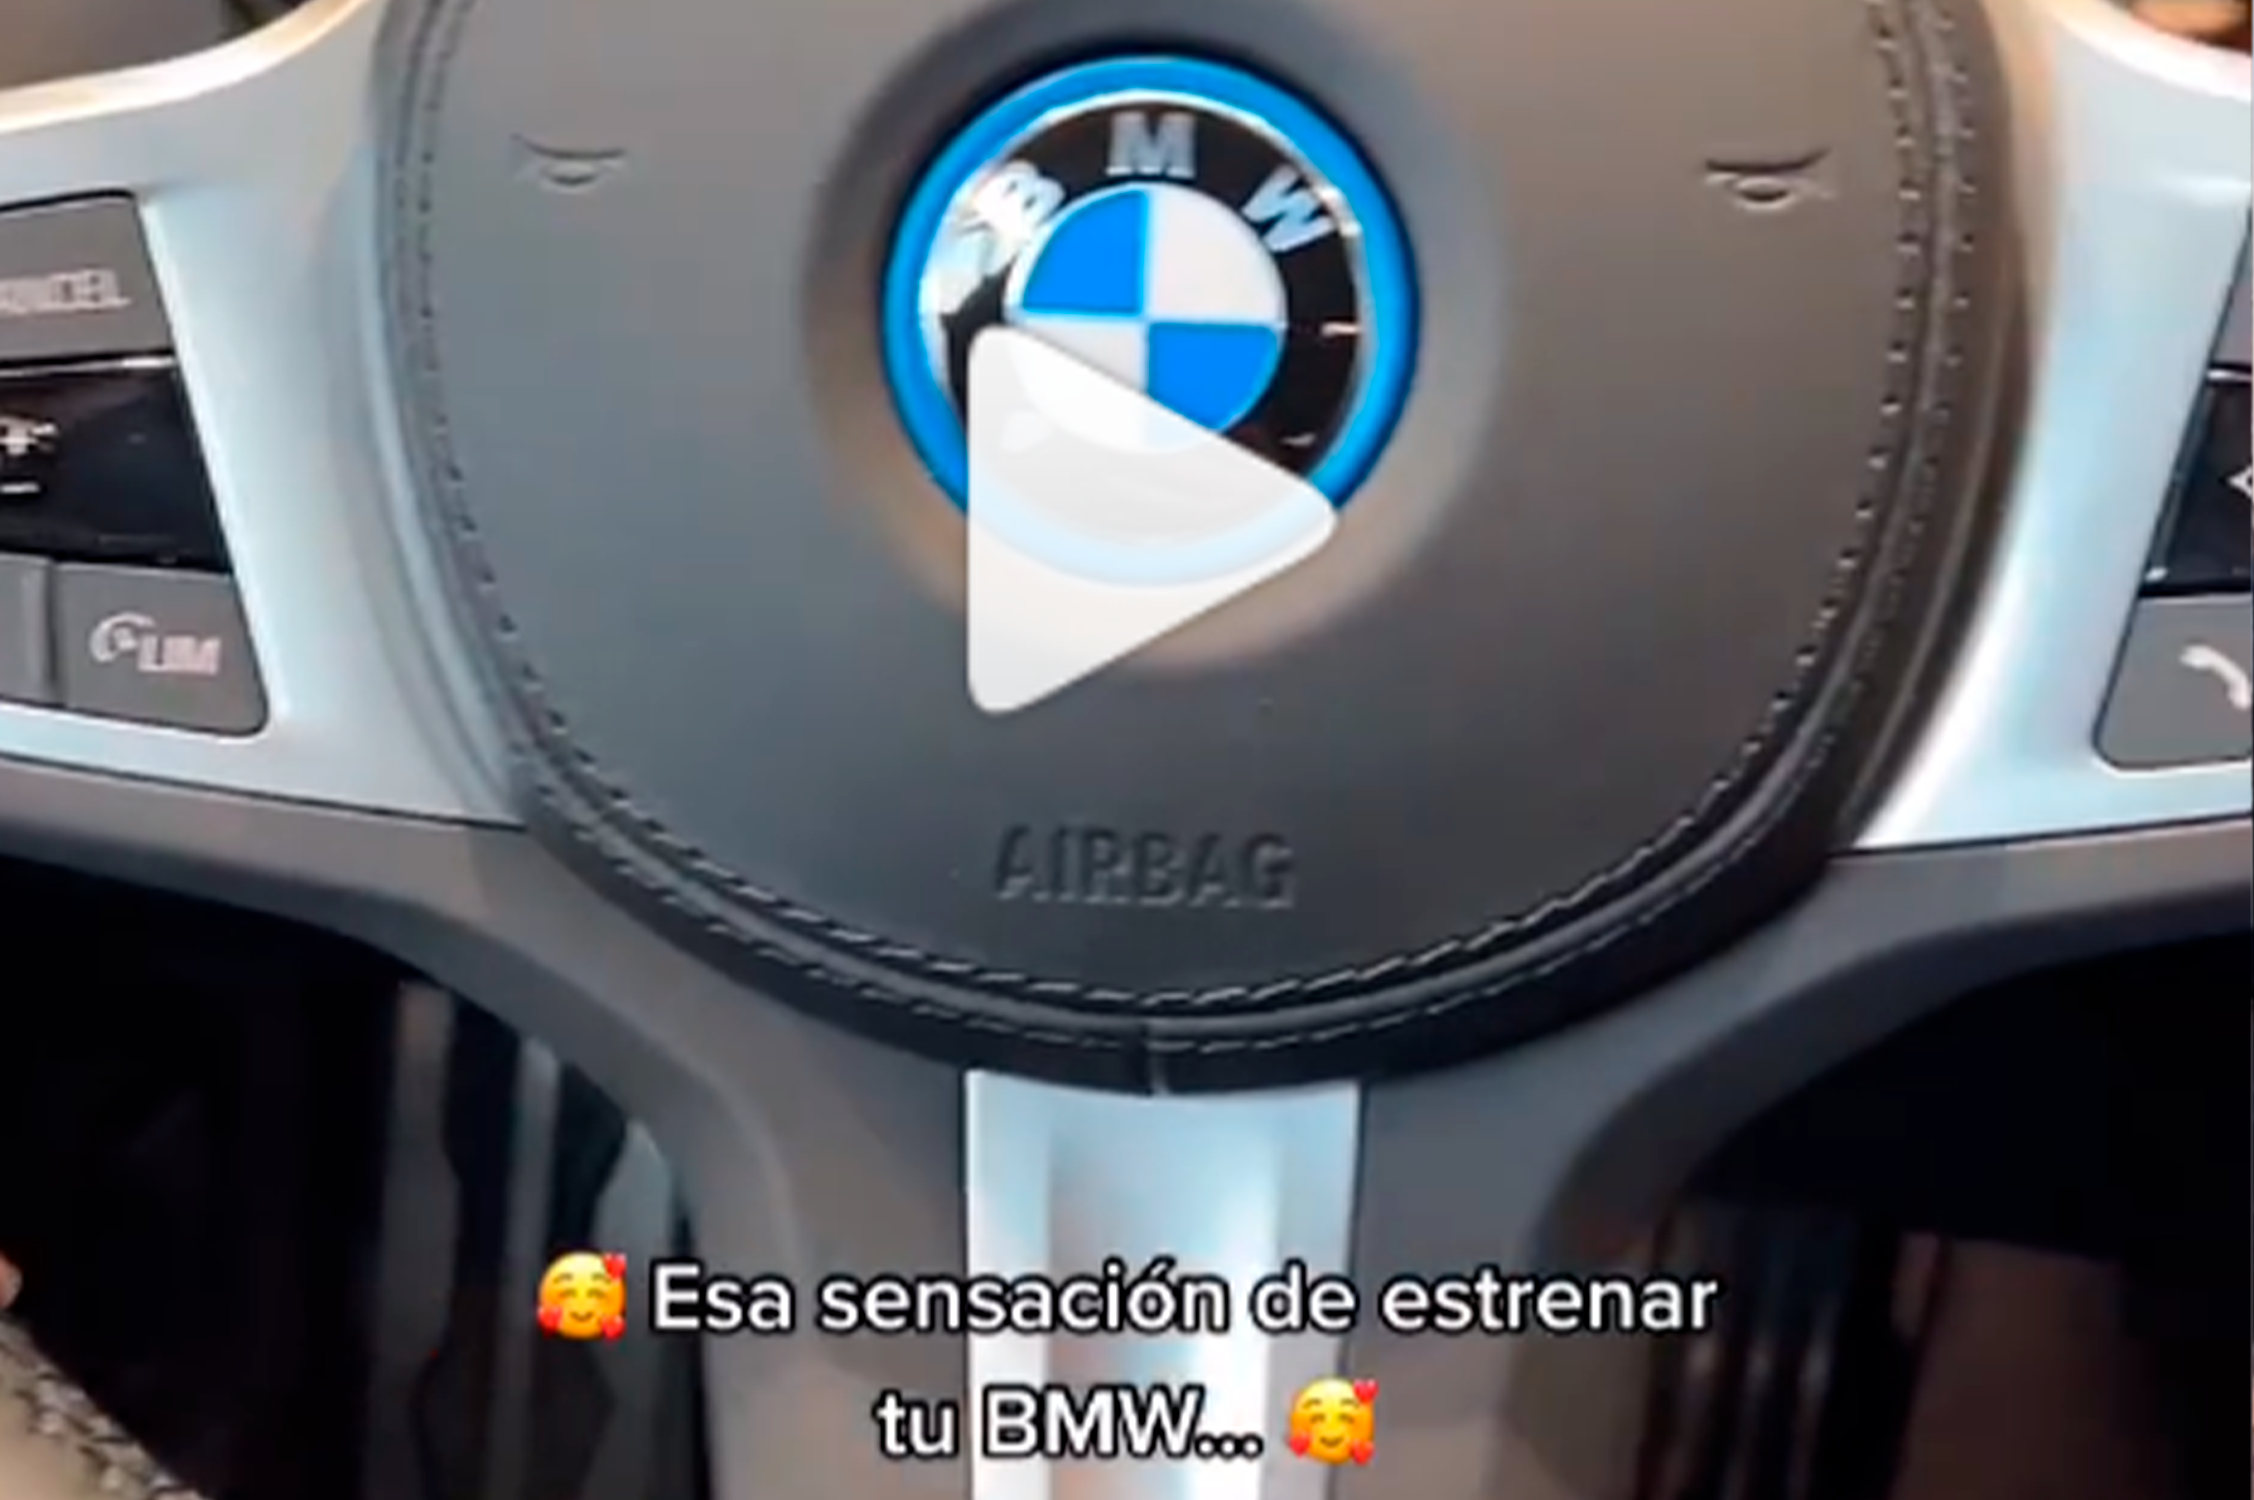 NUEVO REEL: EL PLACER DE ESTRENAR UN NUEVO BMW